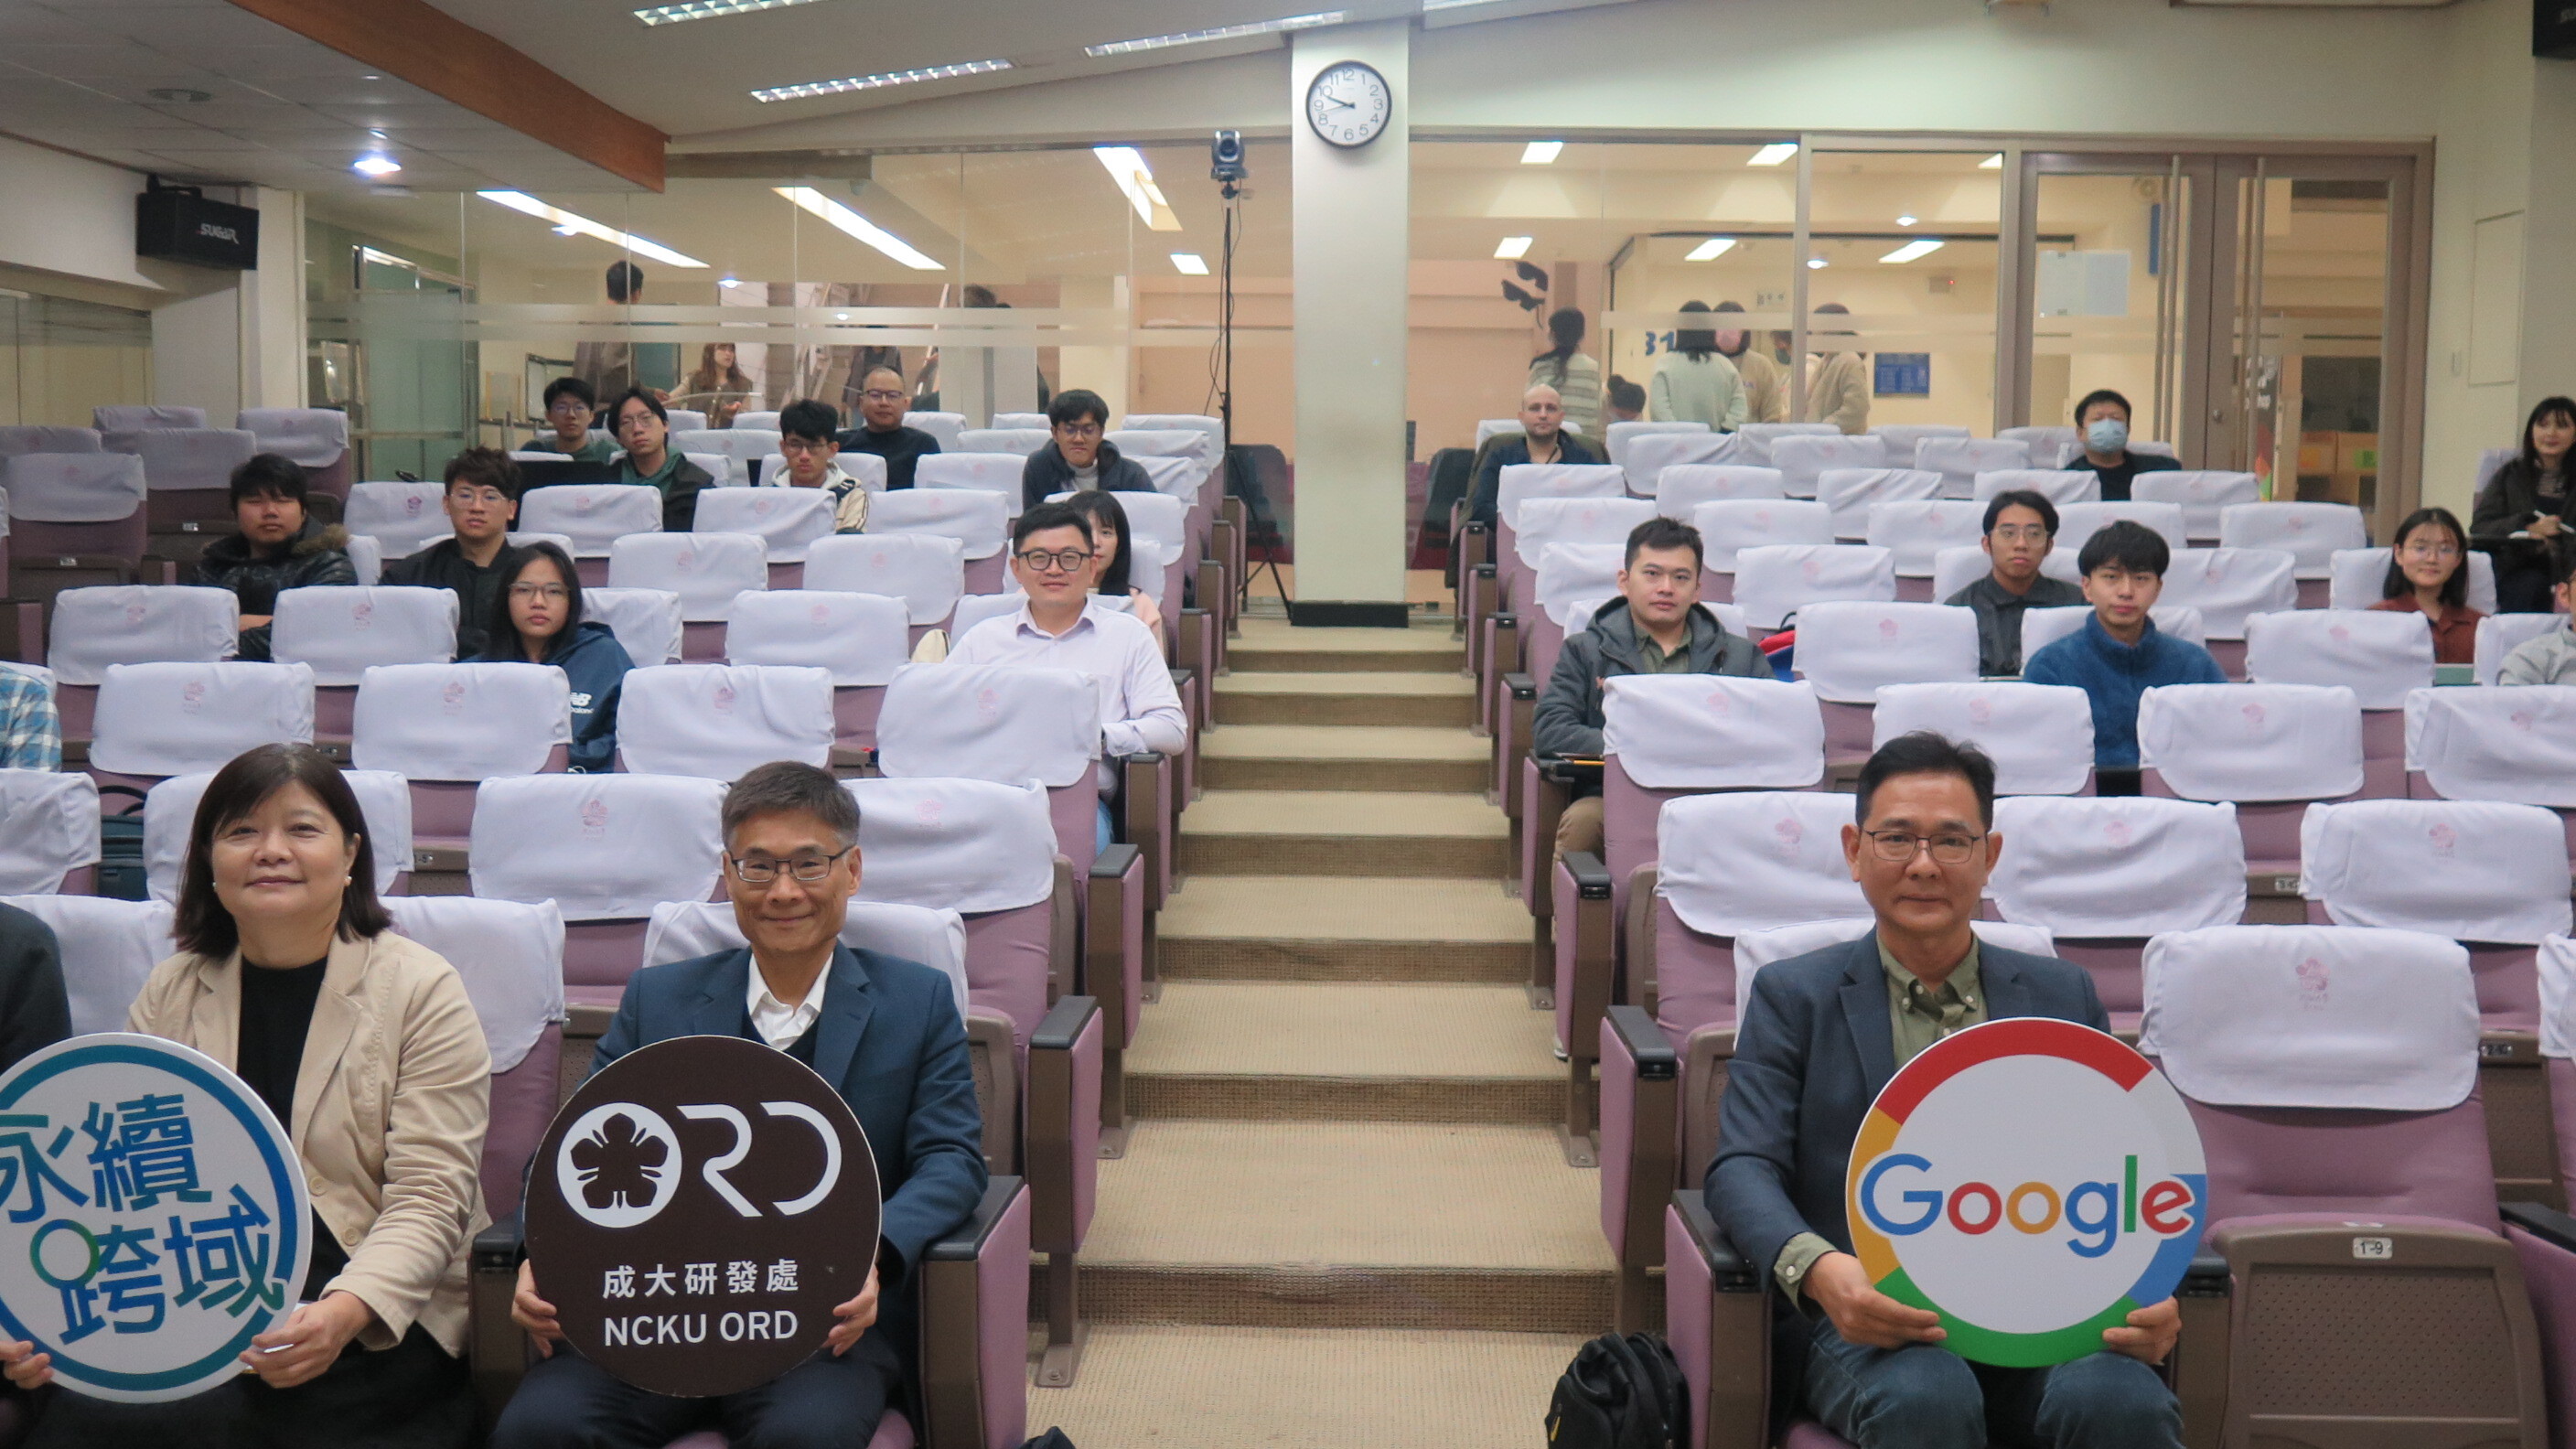 Google 與成大淨零碳排研討會　邀請 Google 專家與校內師生探討淨零談排技術發展及未來合作